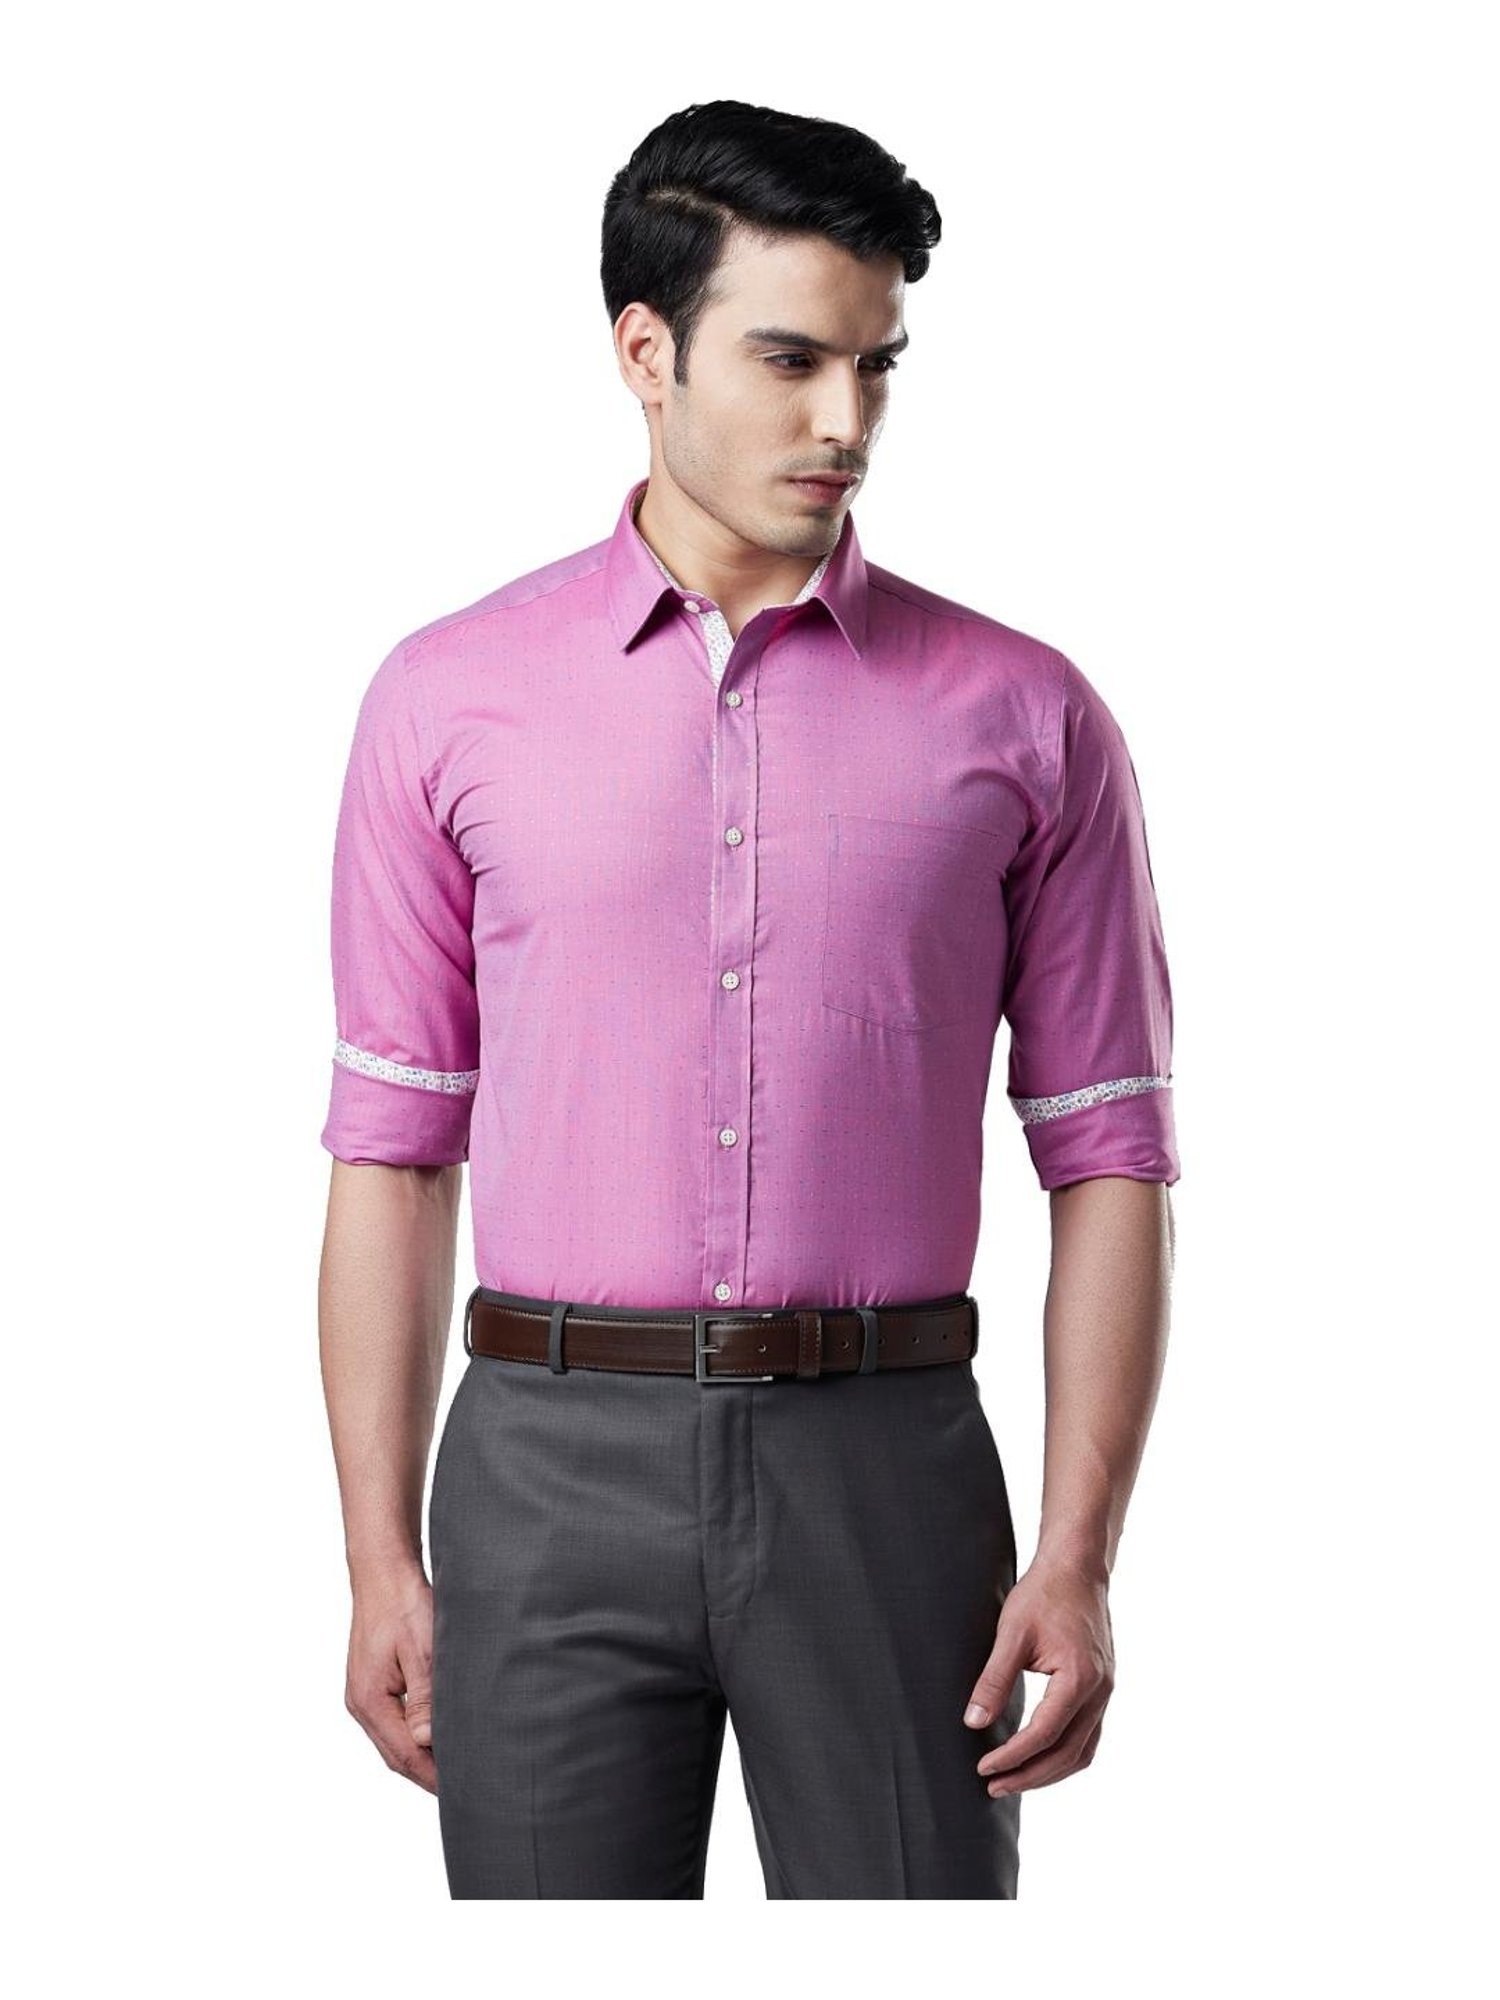 Men's Shirts - Buy Men's Shirts Online Starting at Just ₹219 | Meesho